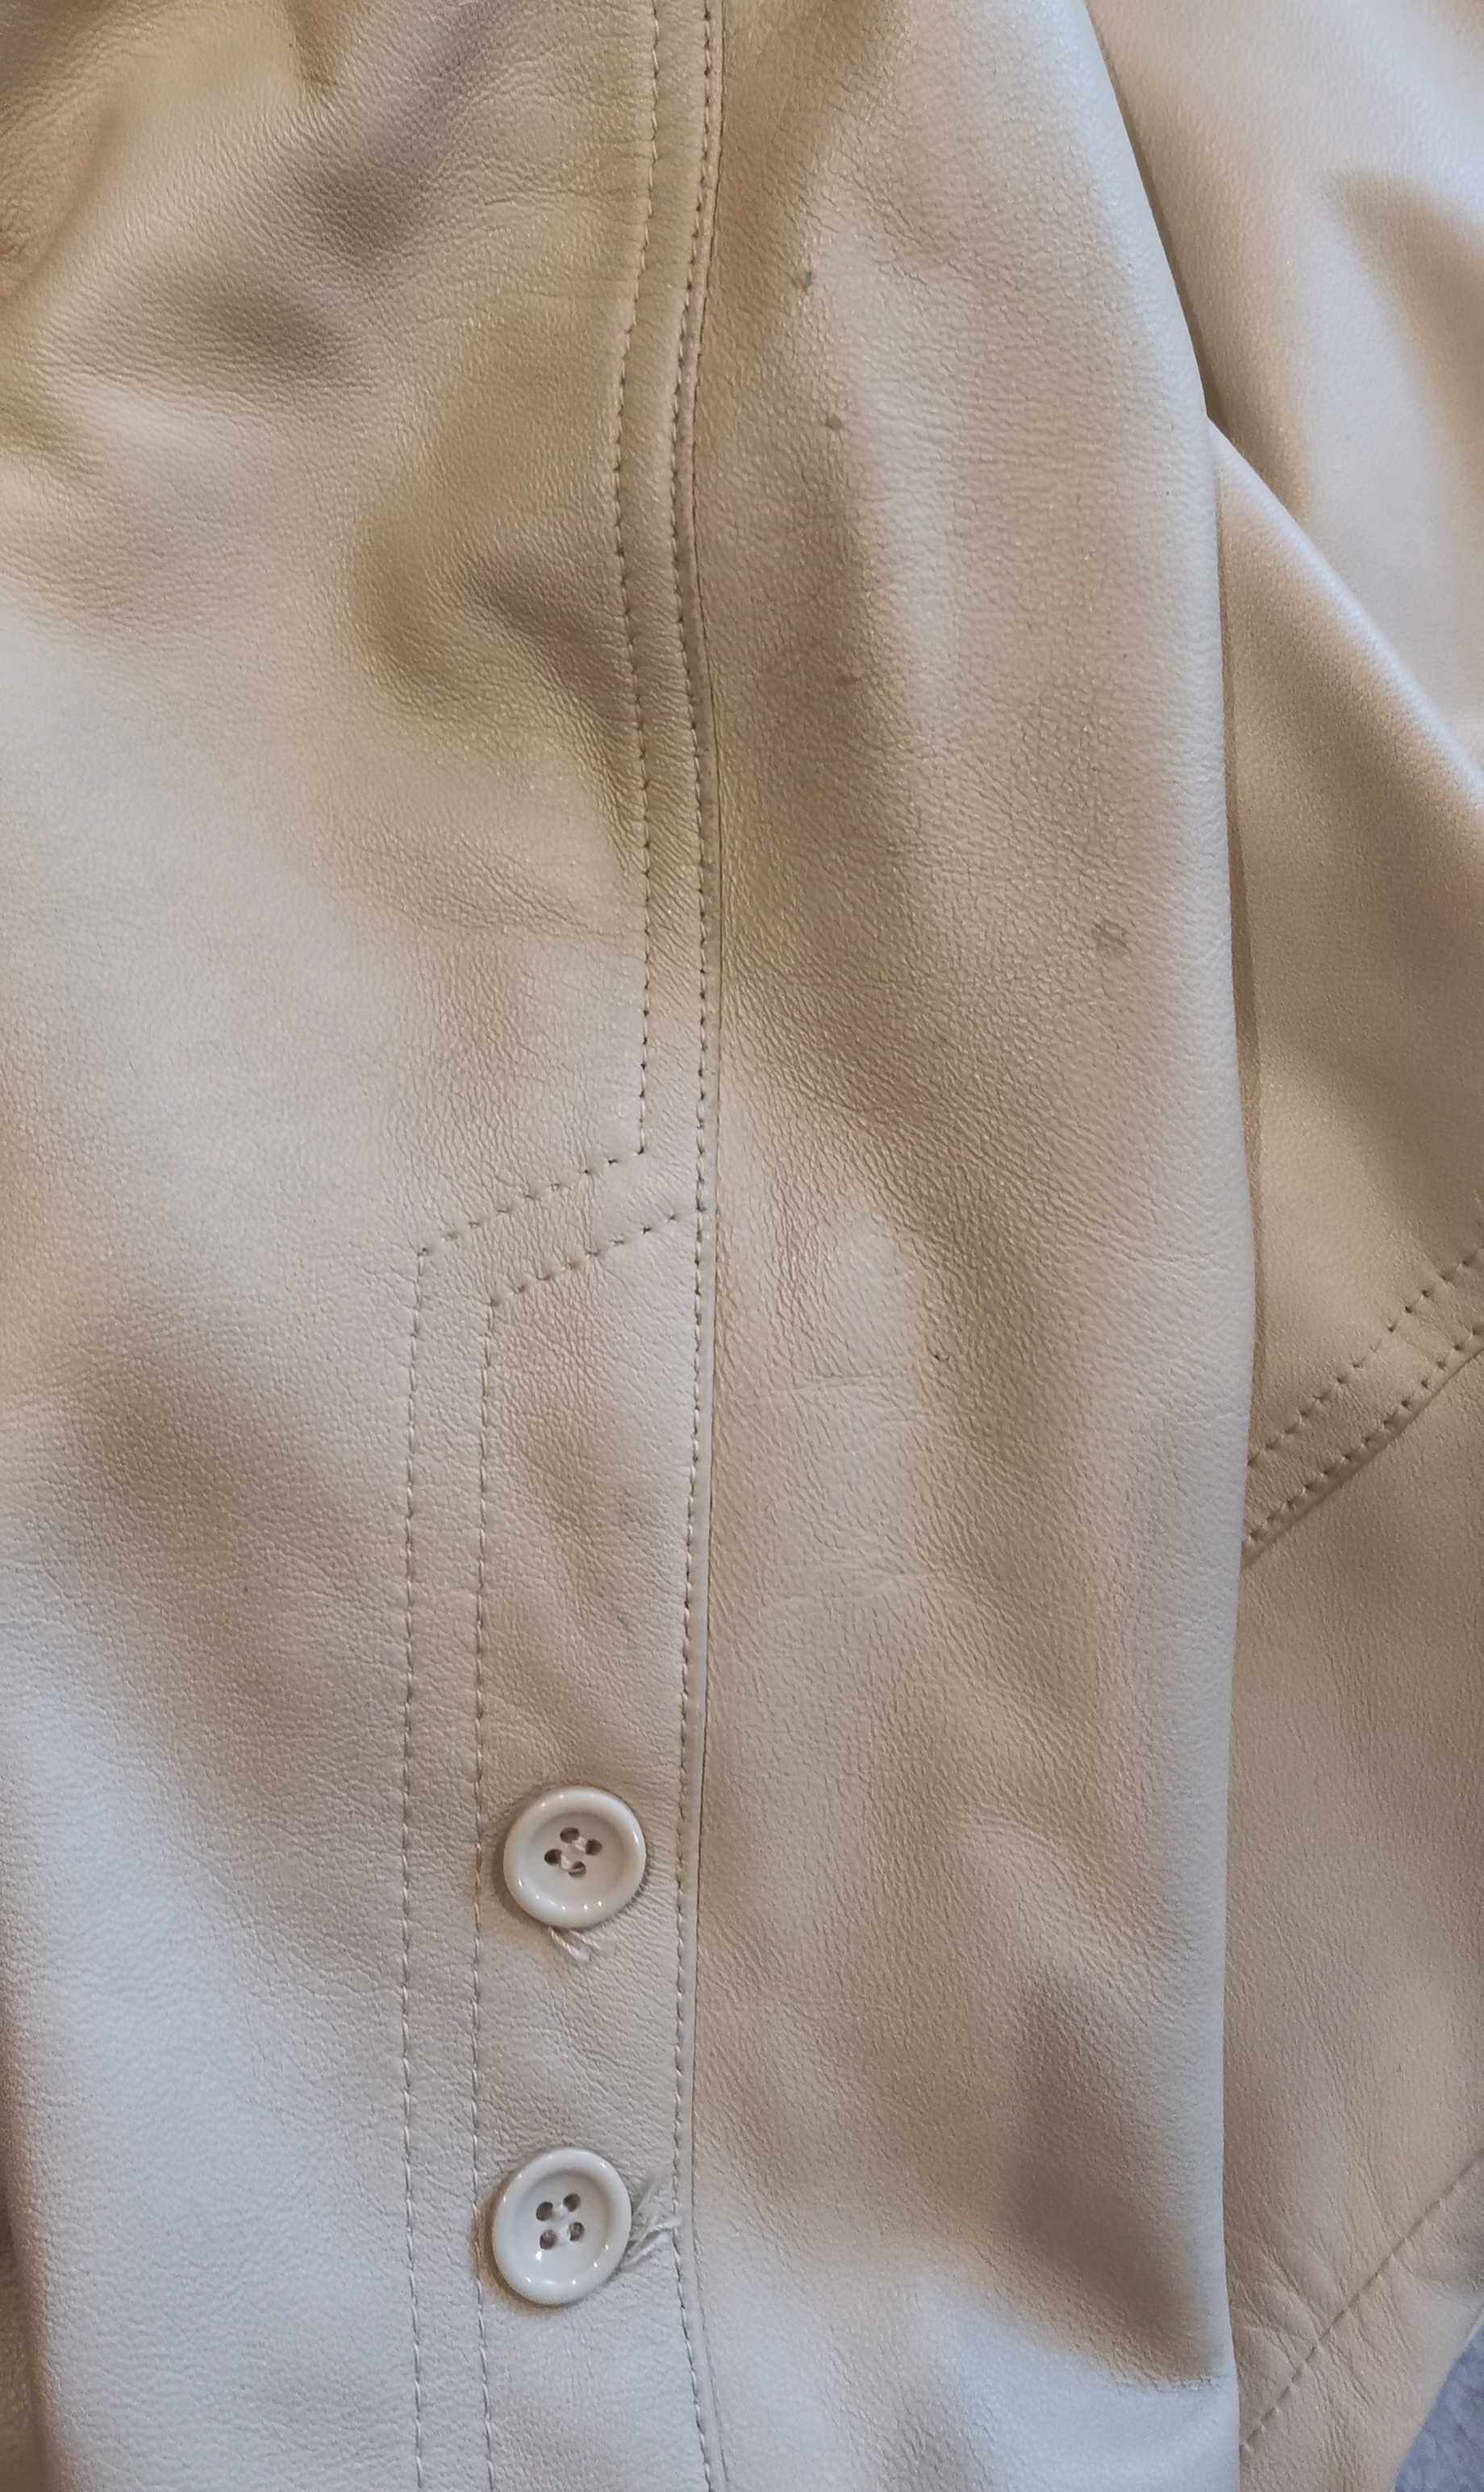 Женская куртка, натур. кожа,SASSO Италия, размер 42